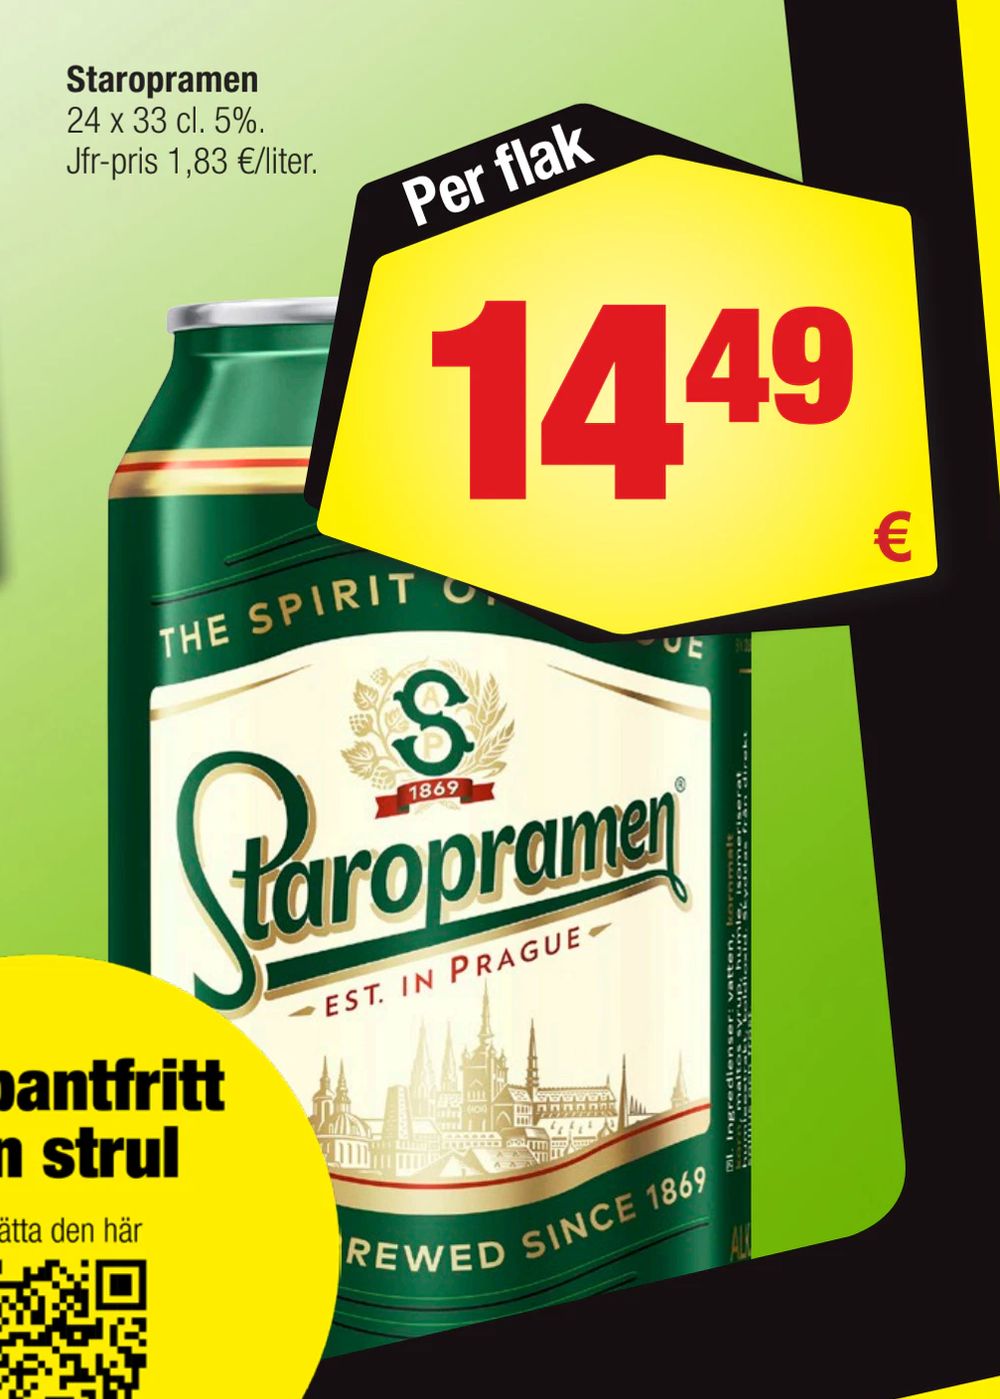 Deals on Staropramen from Calle at 14,49 €